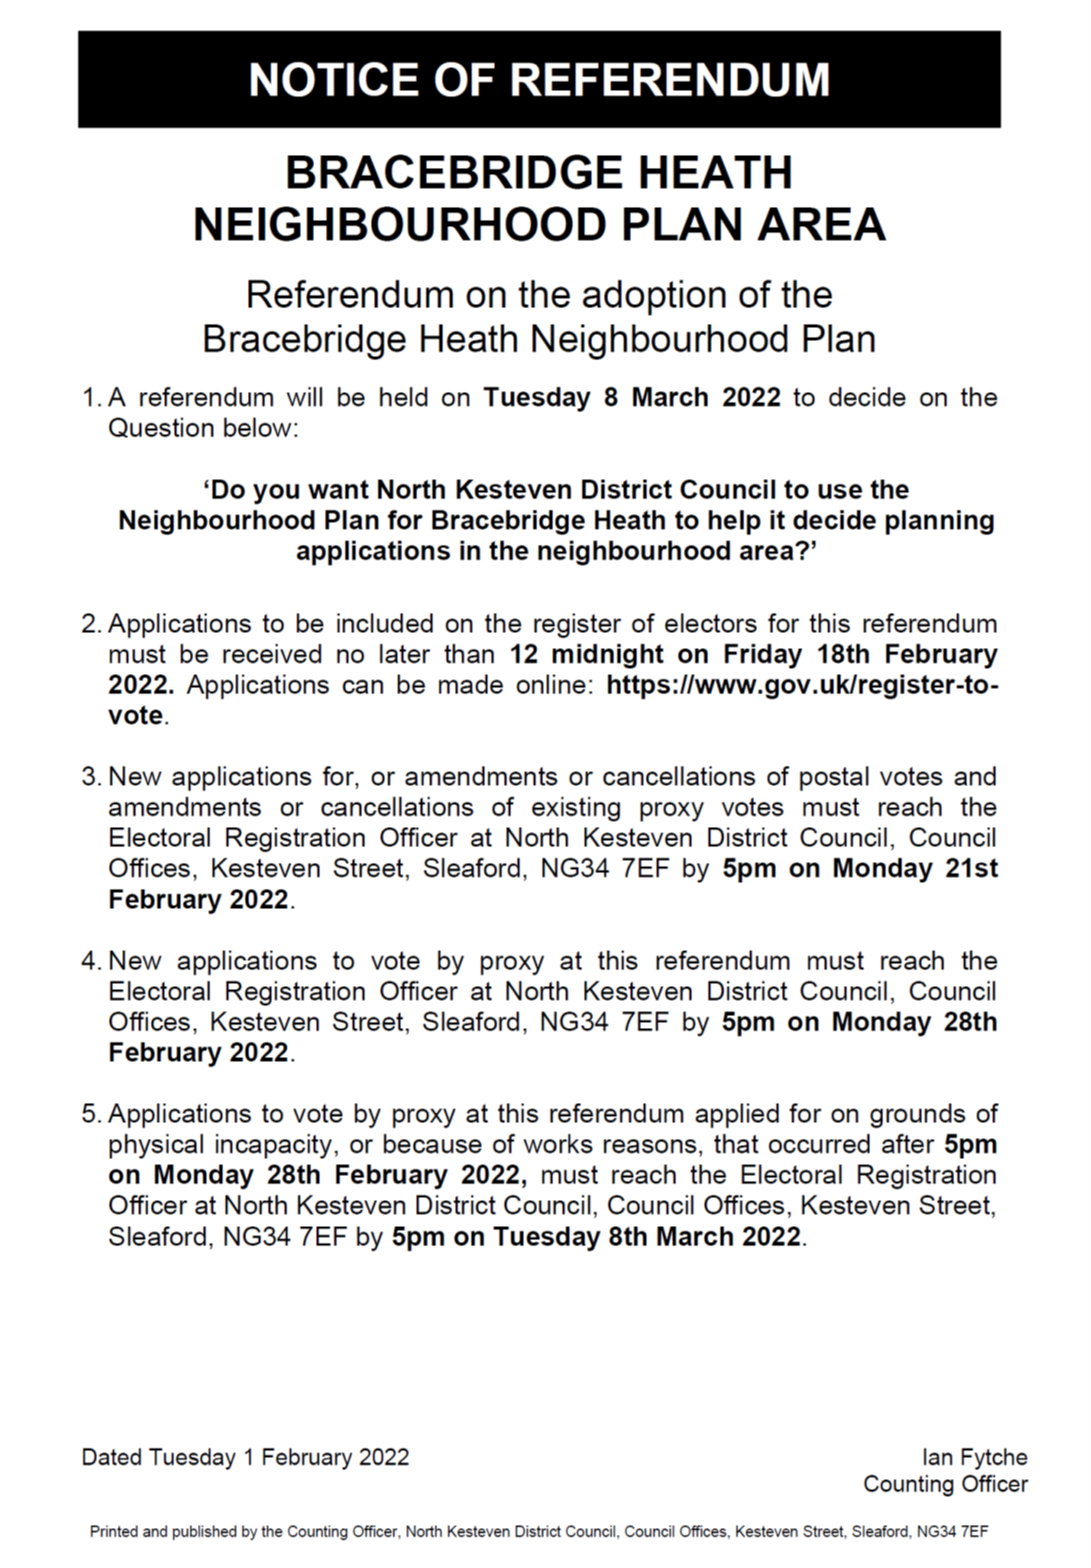 Referendum notice